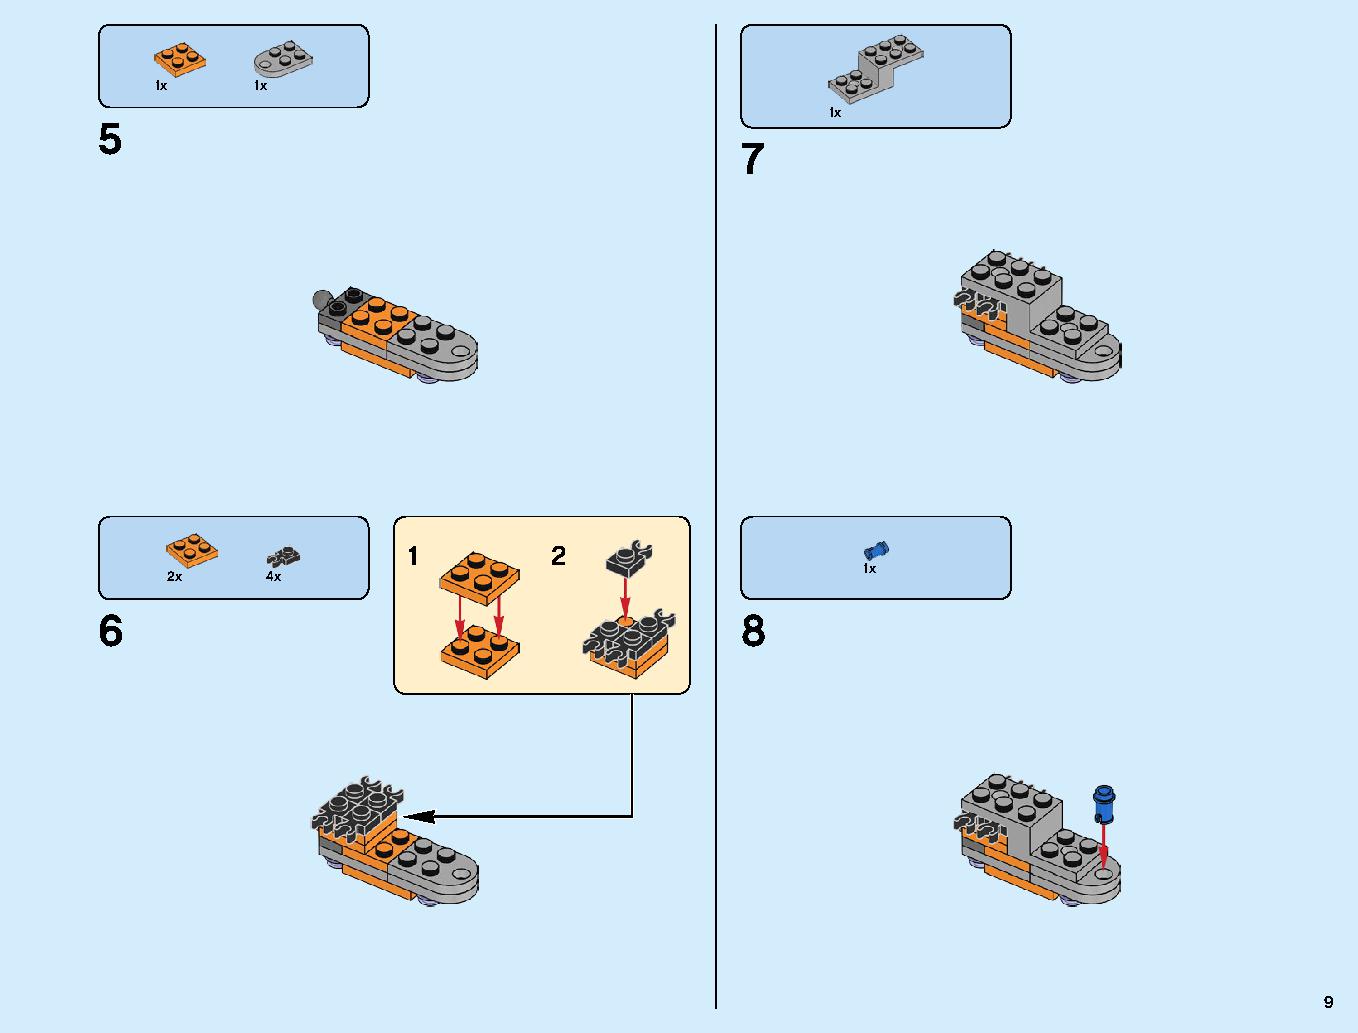 어벤져스 타노스: 최후의 전투 76107 레고 세트 제품정보 레고 조립설명서 9 page